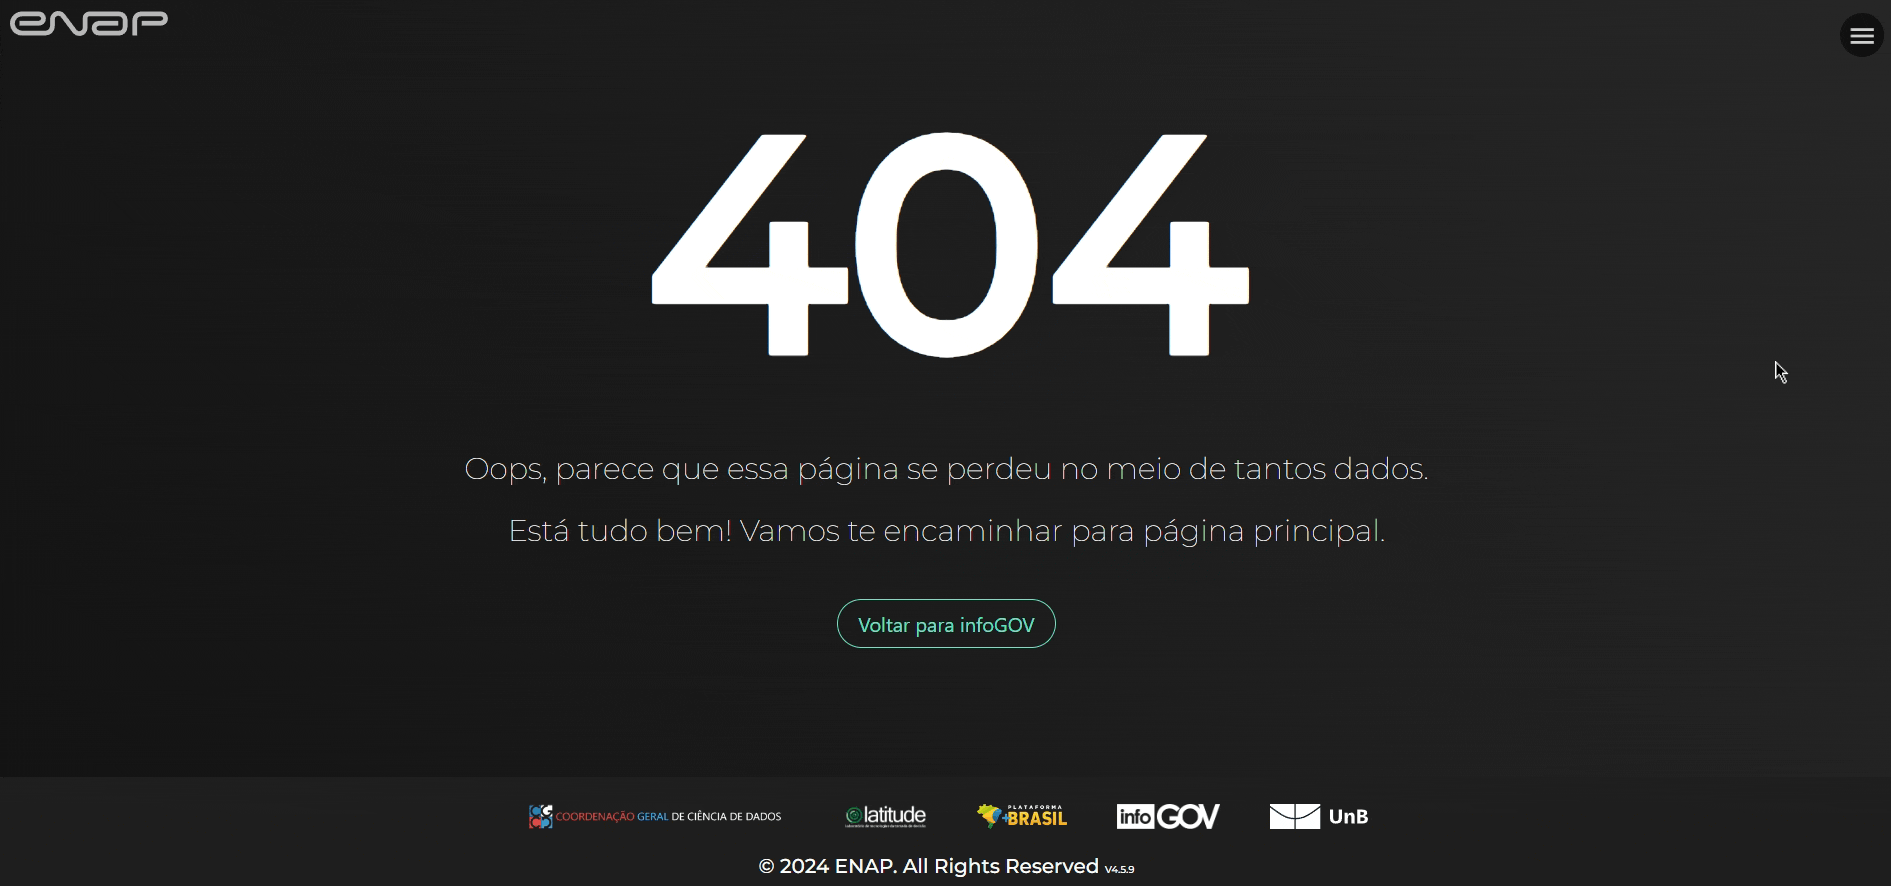 404 - Error page 404 error interaction mini game ui